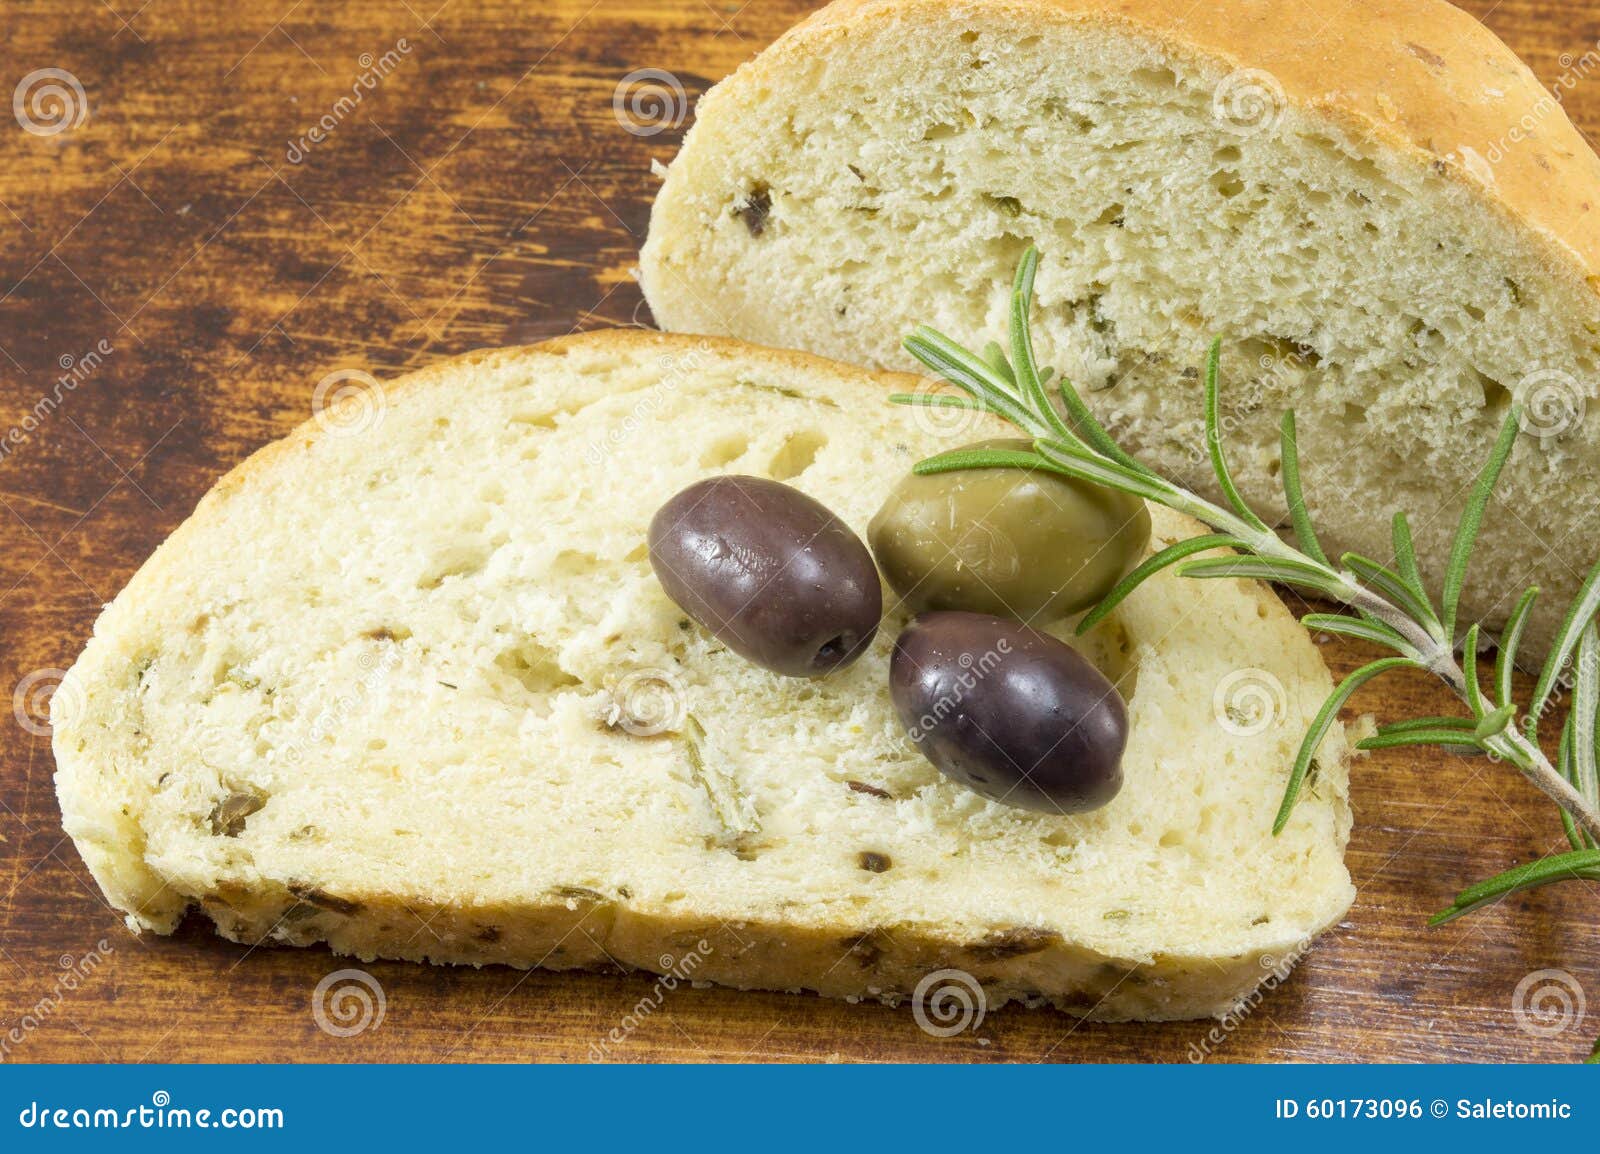 Bread olive oil. Хлеб с травами и пряностями. Итальянский бездрожжевой хлеб с оливками. Хлеб с оливками итальянский на закваске. Хлеб с оливковым маслом и прованскими травами.